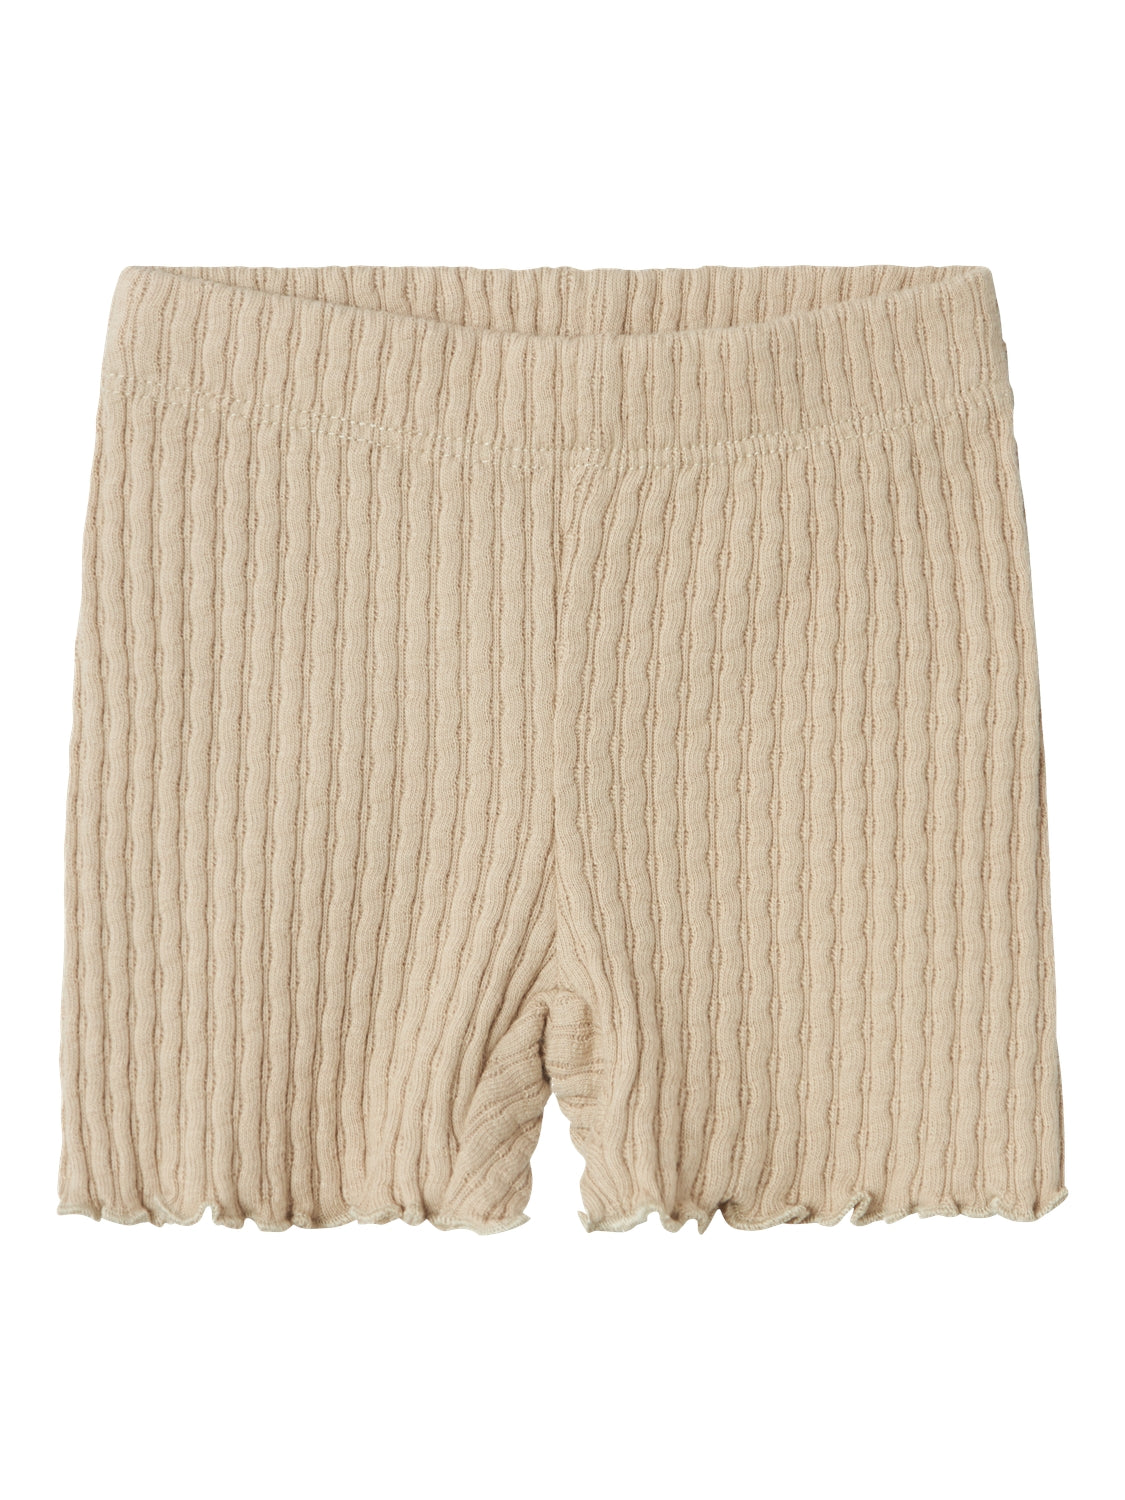 Name it - Jilise biker shorts - Pure cashmere